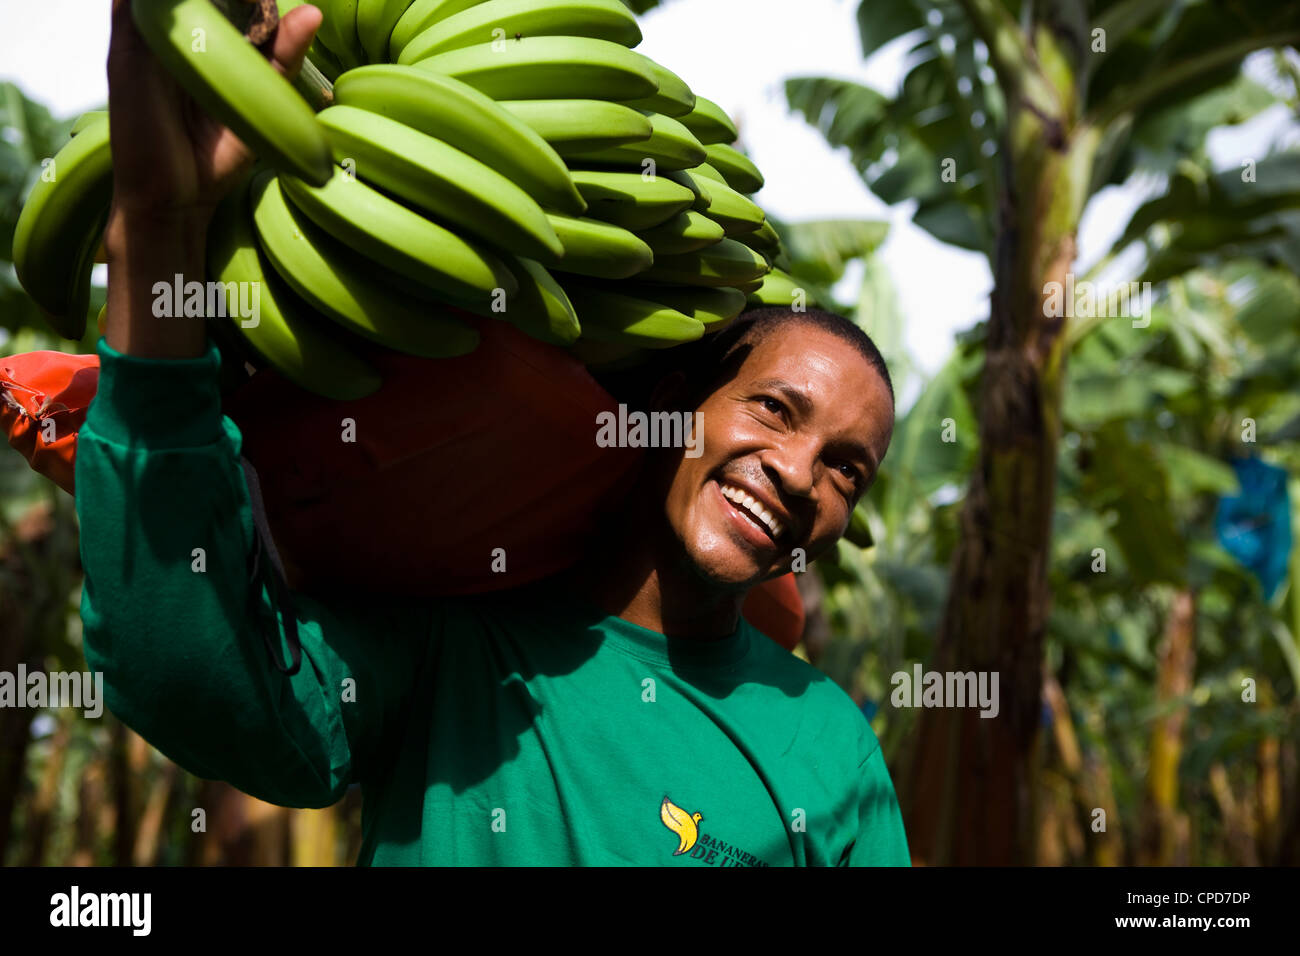 Los agricultores titulares de banano Fairtrade una rama grande de bananas Foto de stock